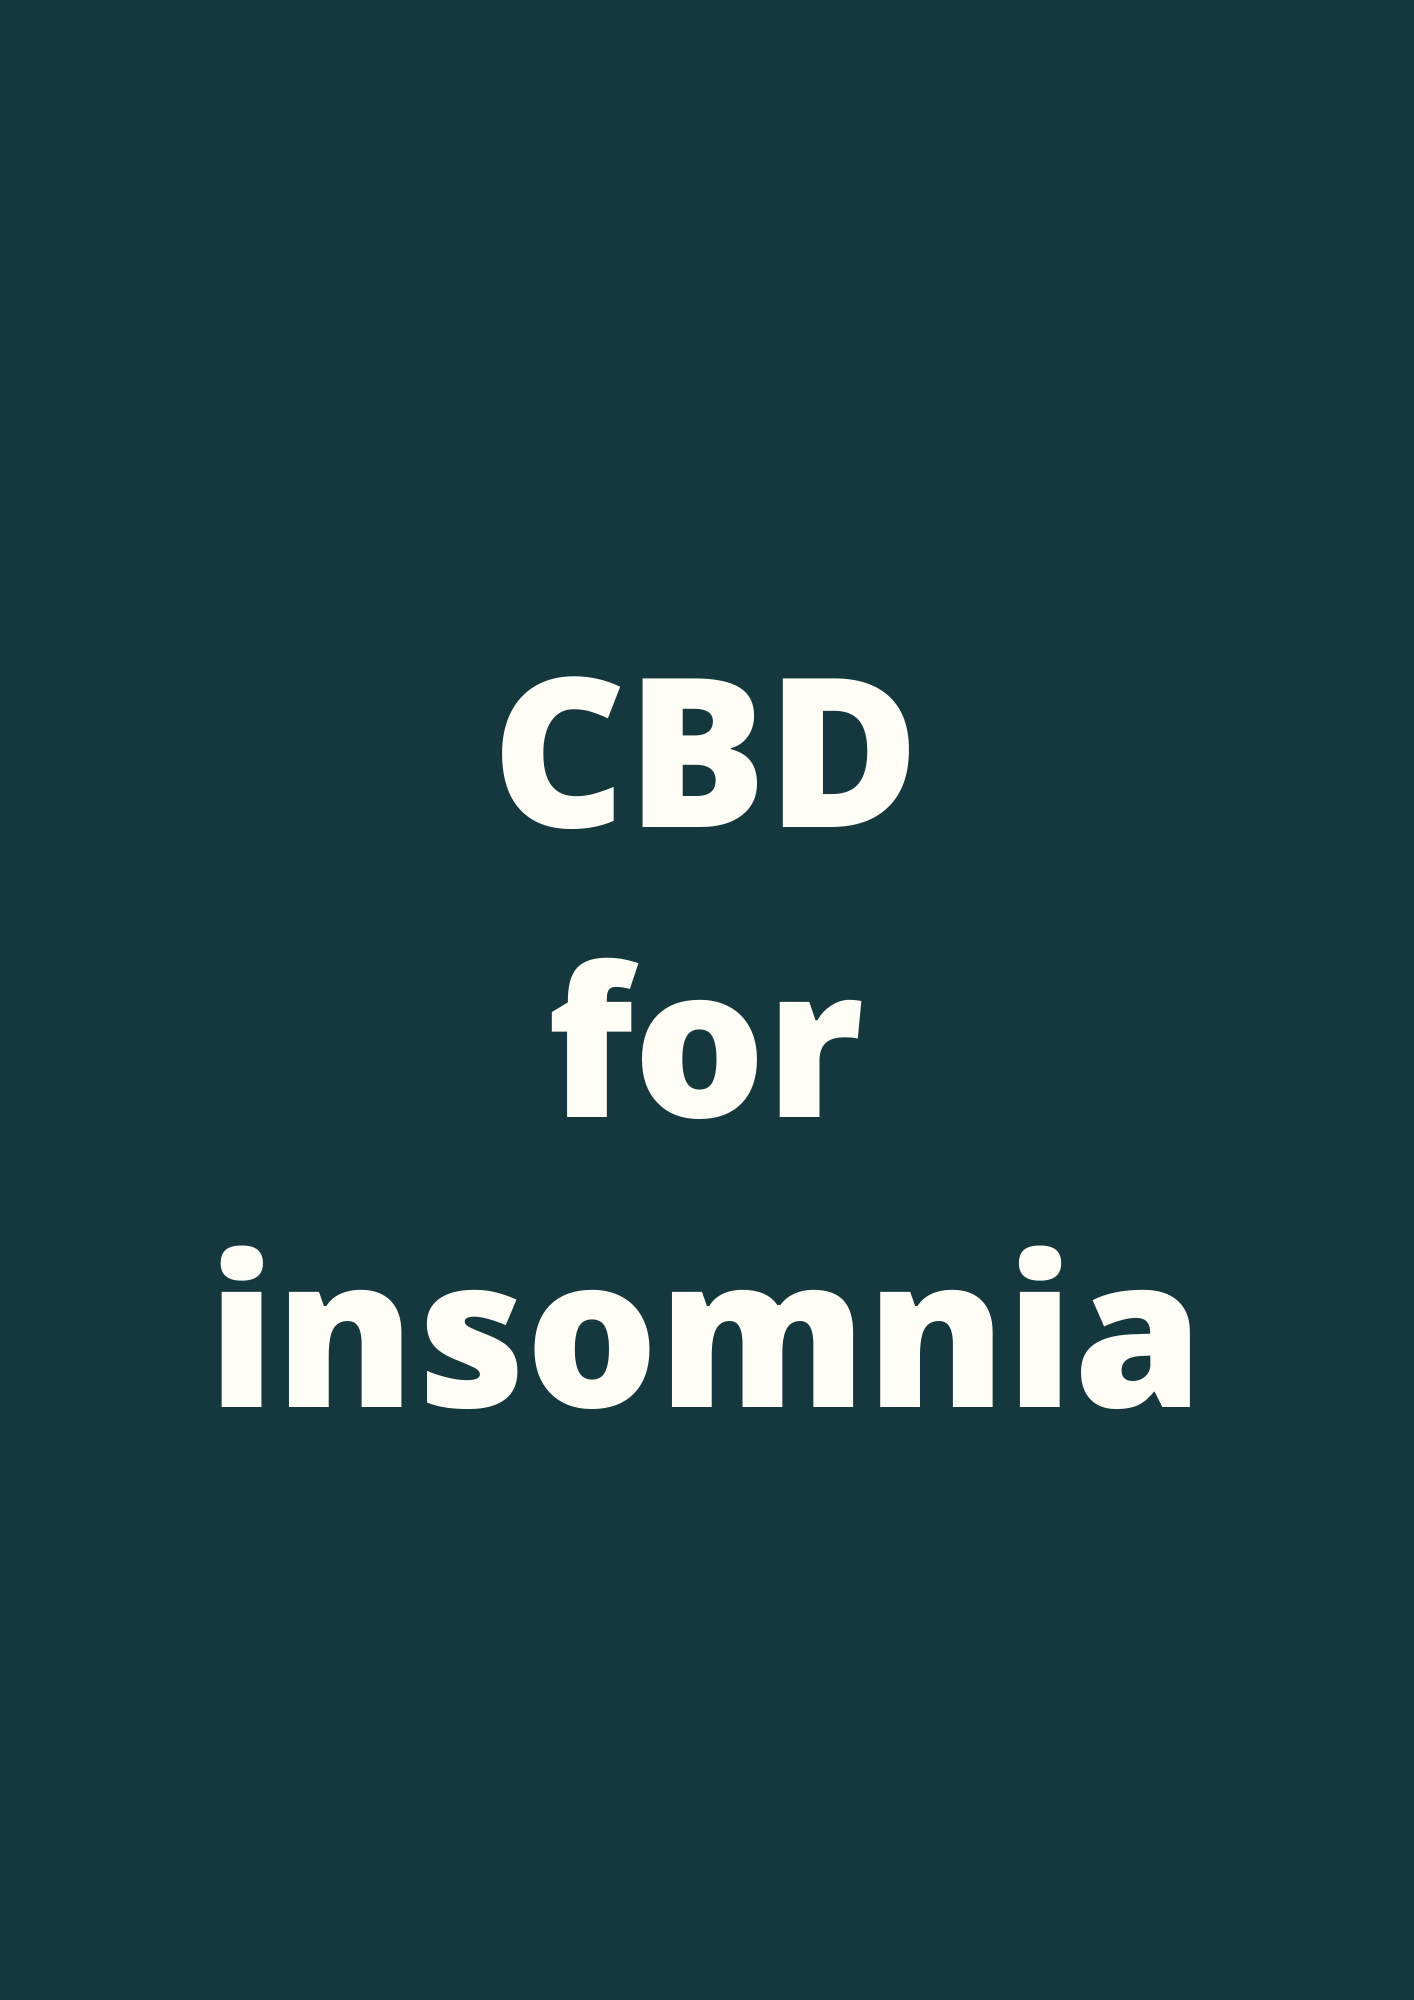 Scientific paper on CBD for insomnia